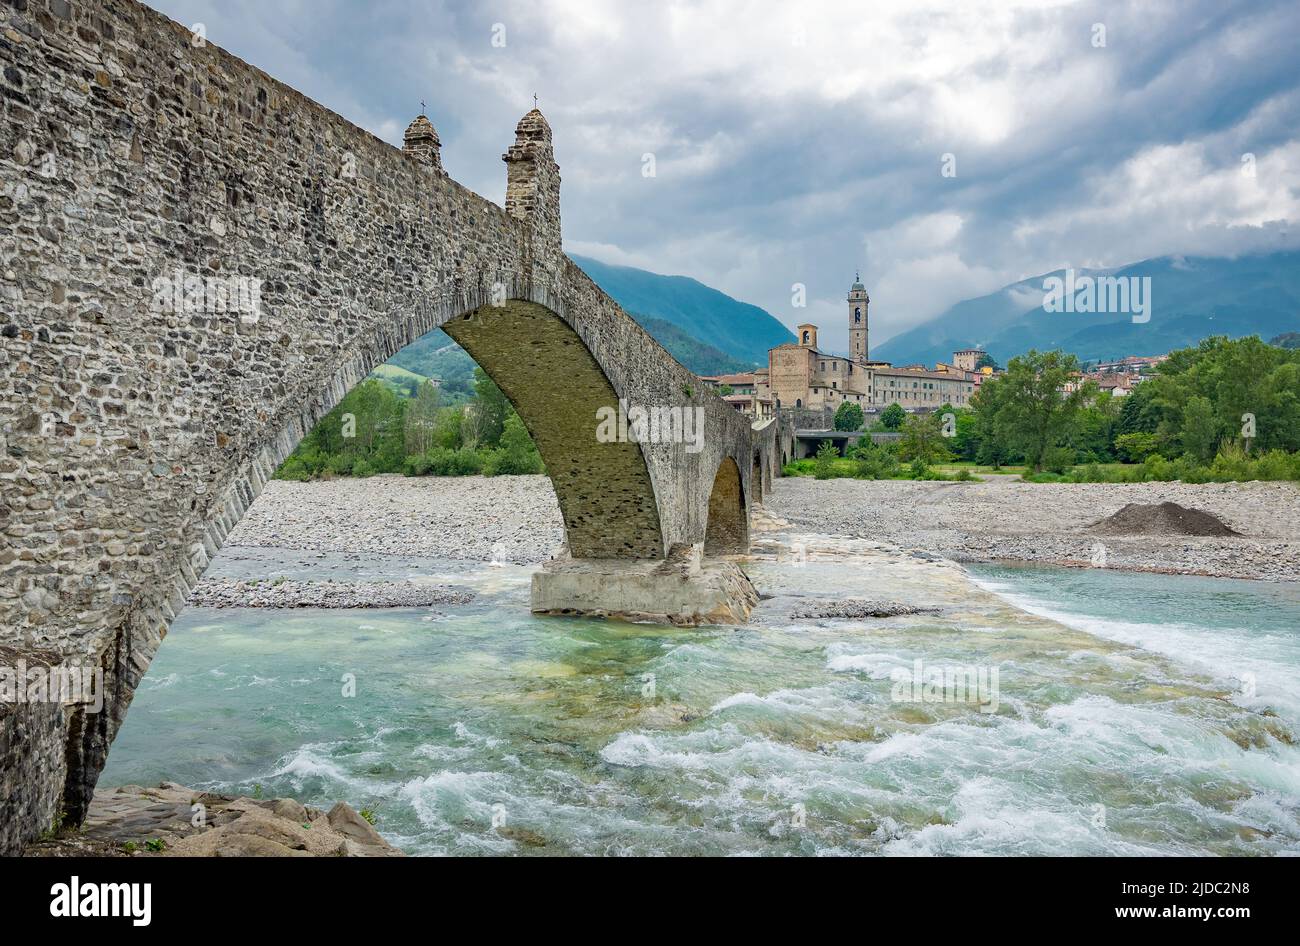 Bobbio, Italia, el Puente Viejo (también conocido como el Puente del Diablo) sobre el río Trebbia, con el país en el fondo Foto de stock